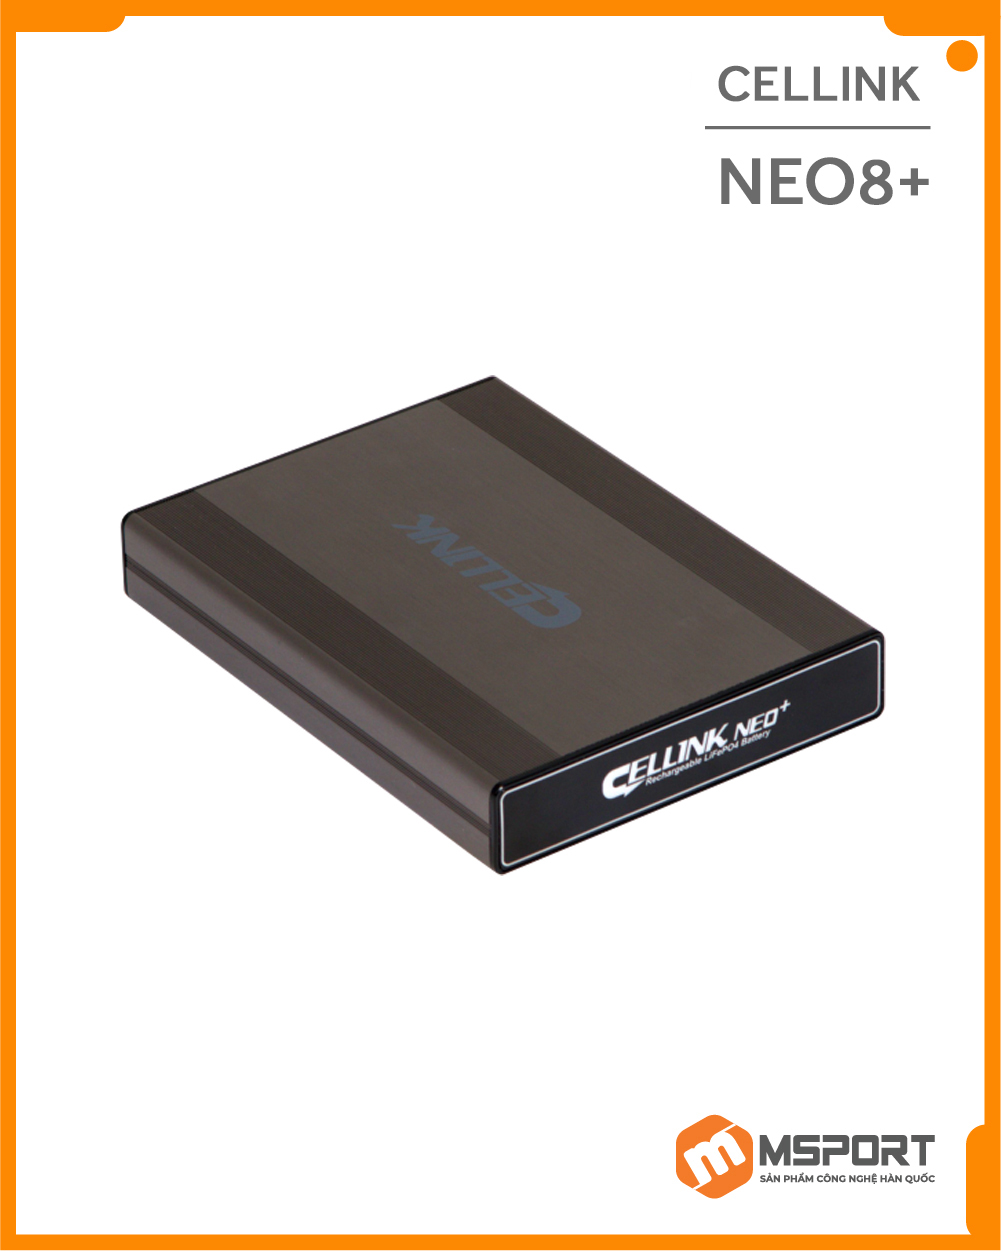 Pin camera hành trình Cellink NEO 8+